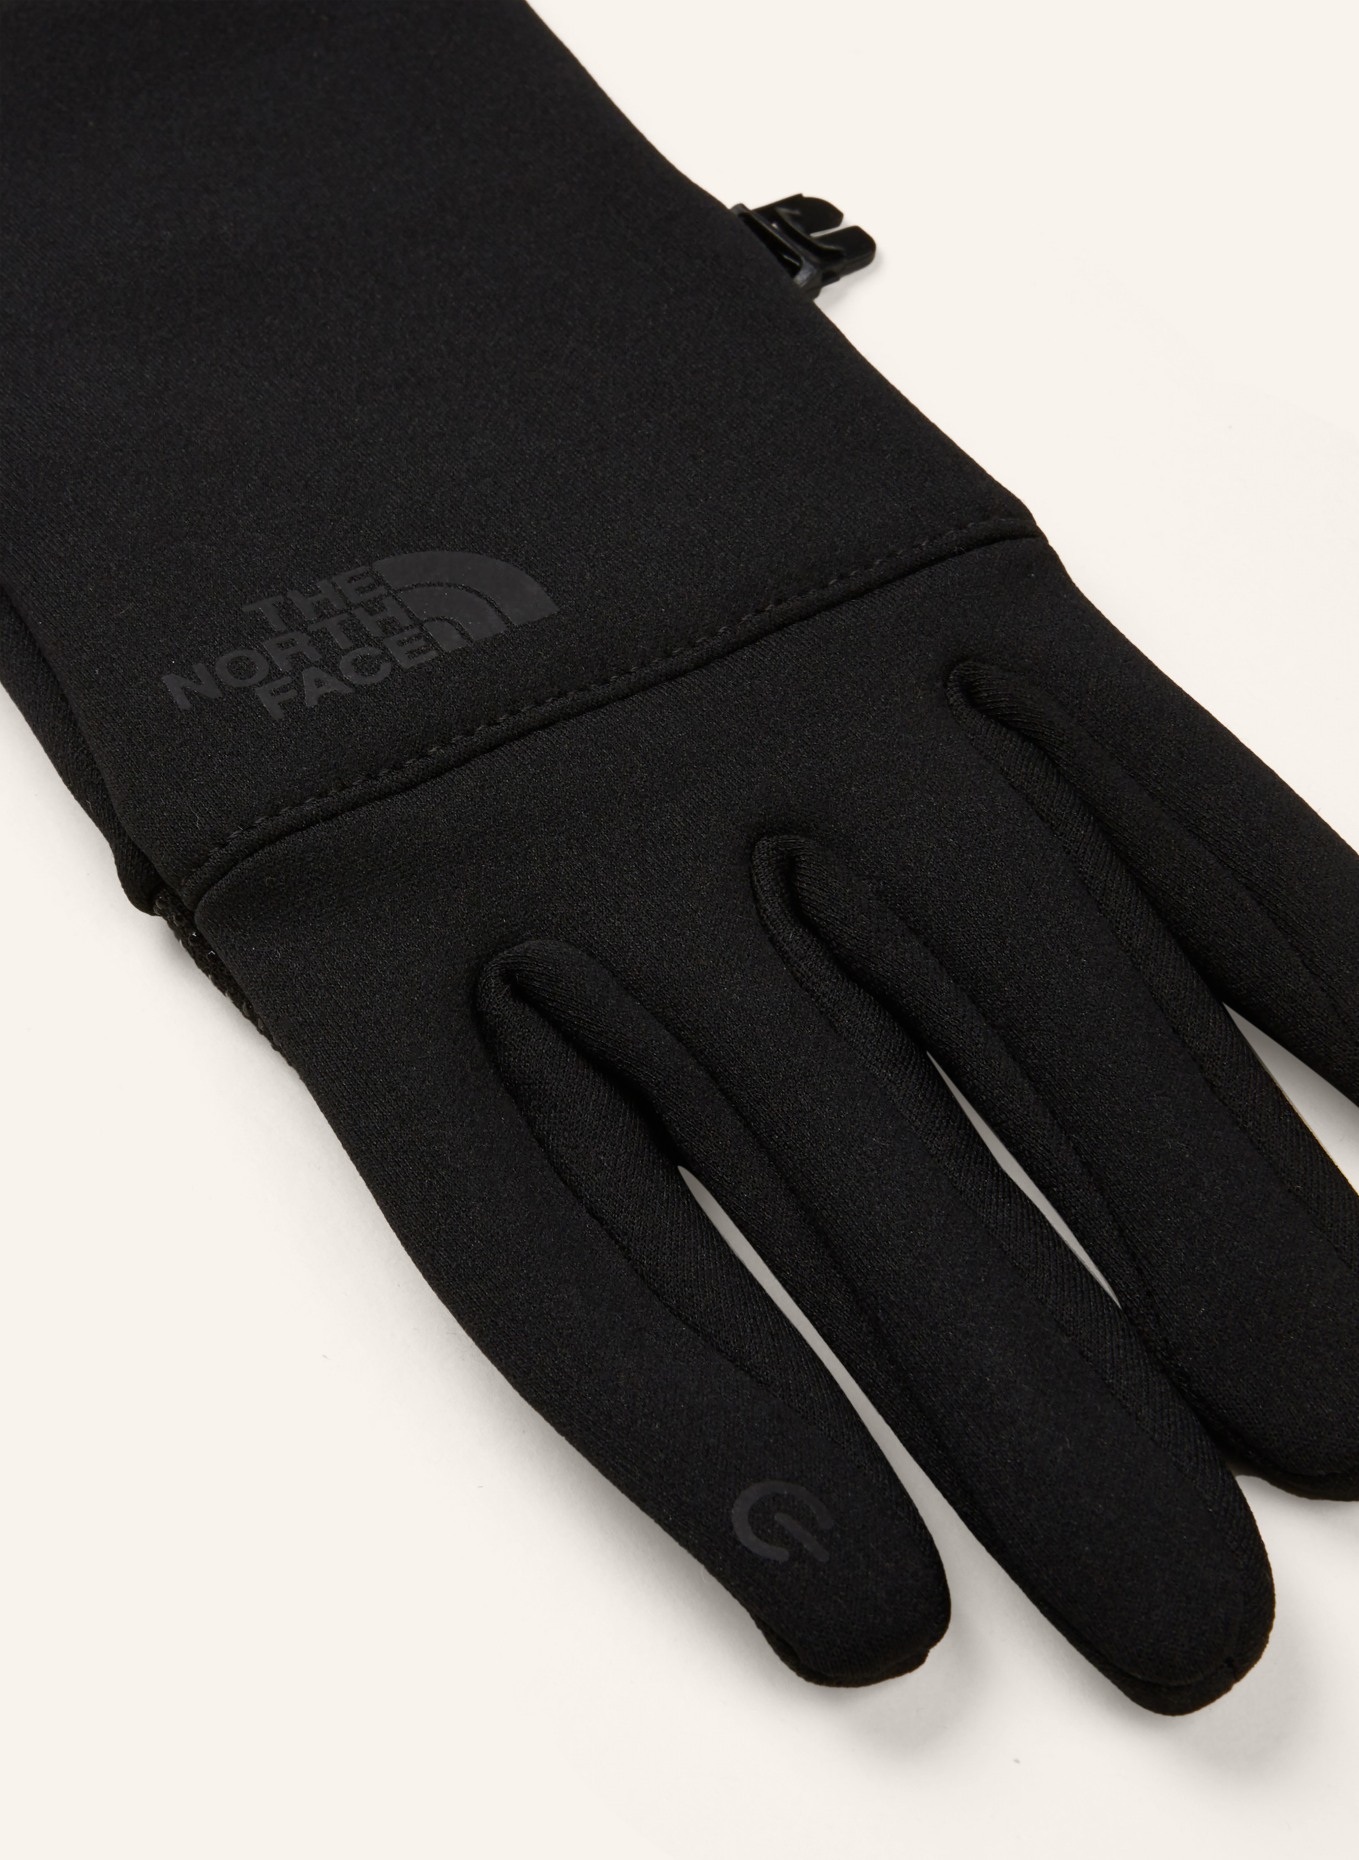 mit schwarz ETIP Touchscreen-Funktion NORTH THE FACE in Multisport-Handschuhe